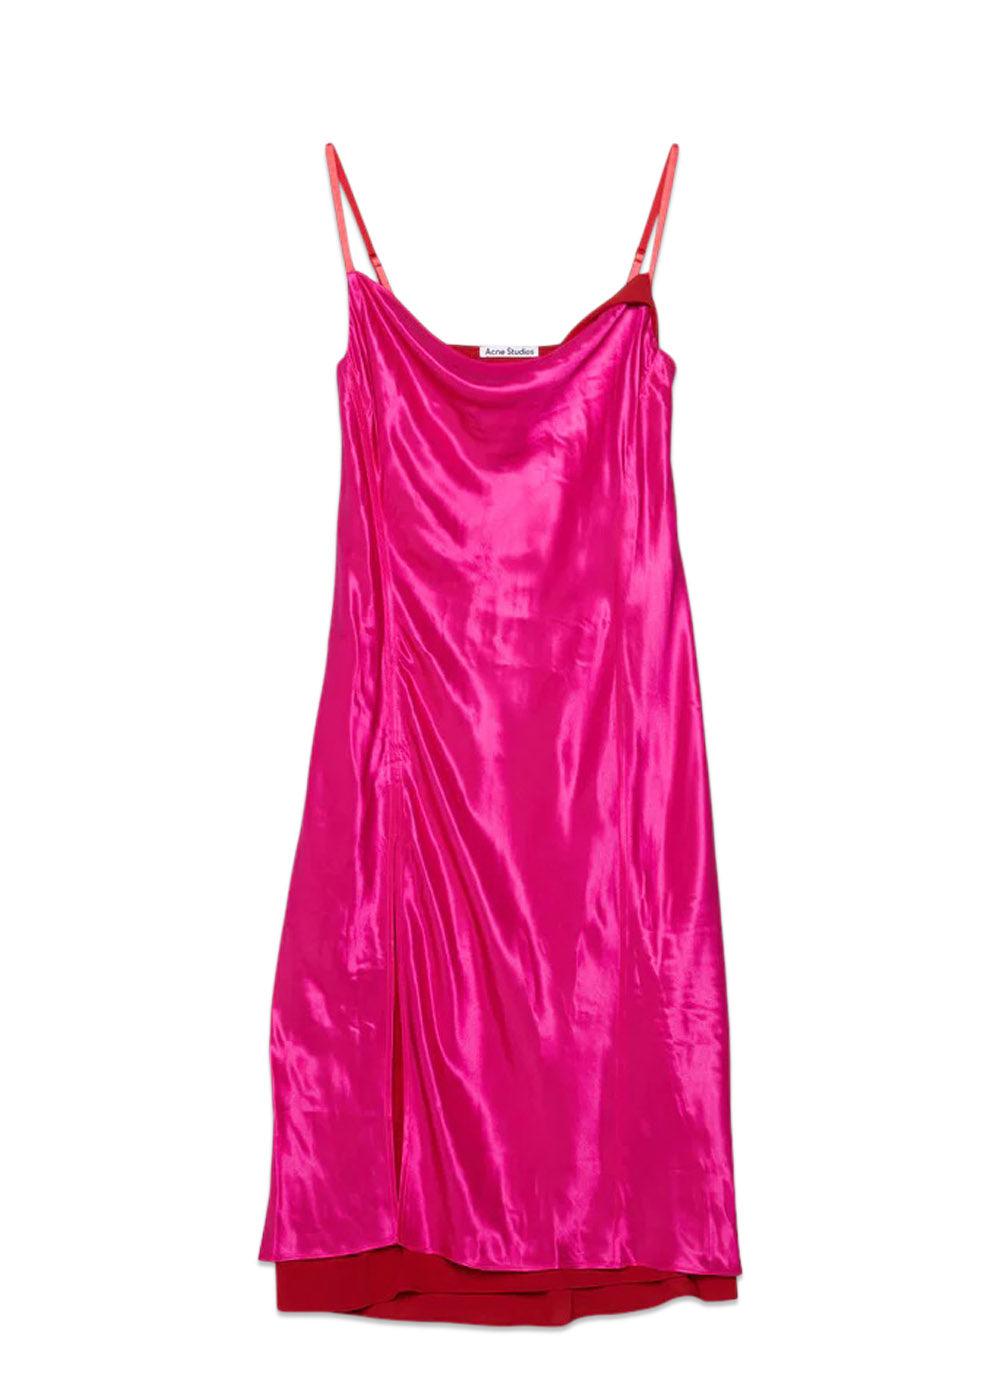 Acne Studios' FN-WN-DRES000878 - Fuchsia Pink. Køb kjoler her.